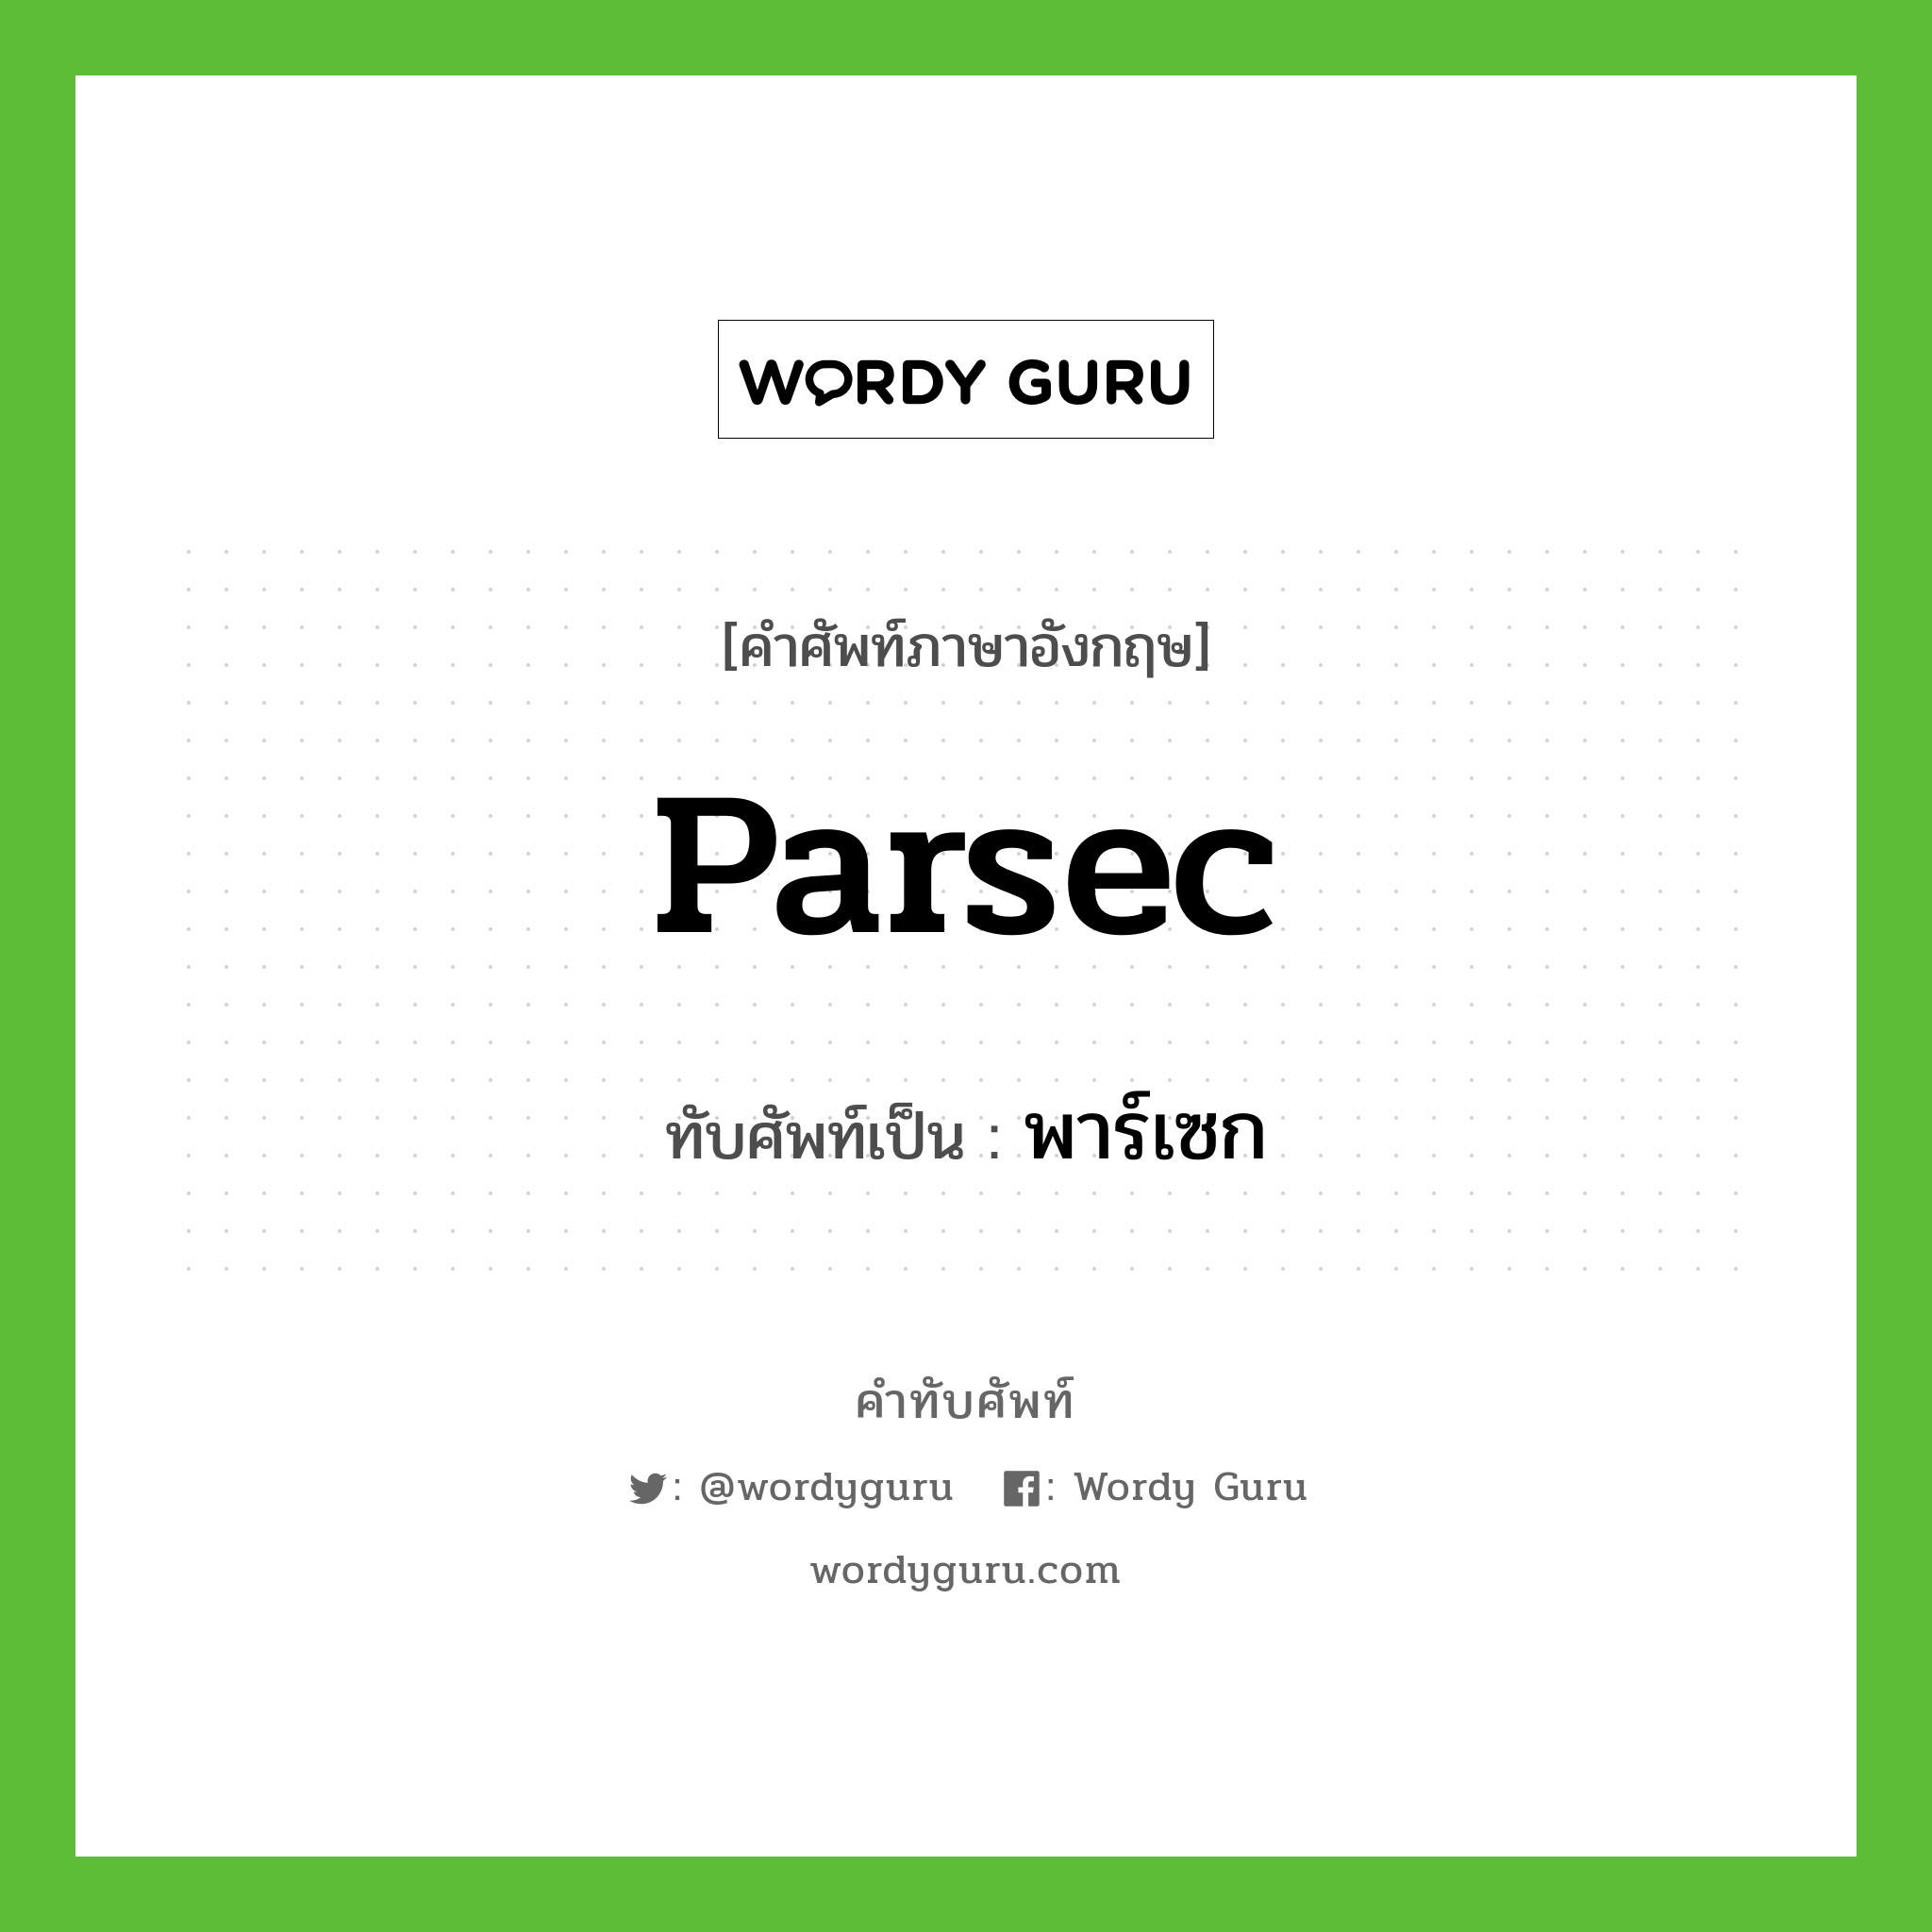 parsec เขียนเป็นคำไทยว่าอะไร?, คำศัพท์ภาษาอังกฤษ parsec ทับศัพท์เป็น พาร์เซก